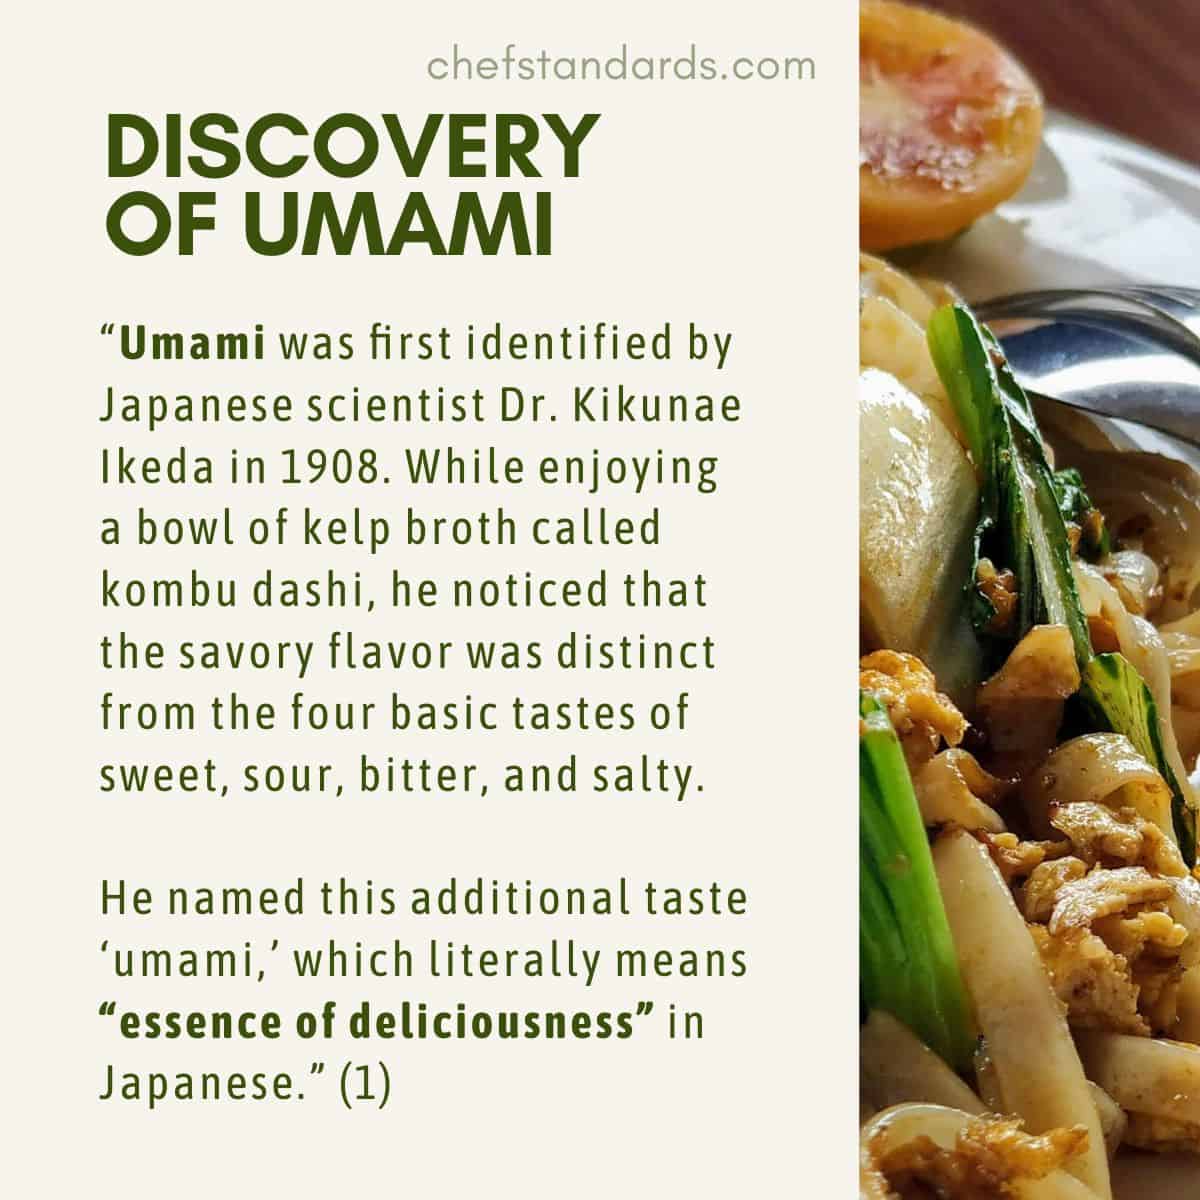 DISCOVERY OF UMAMI